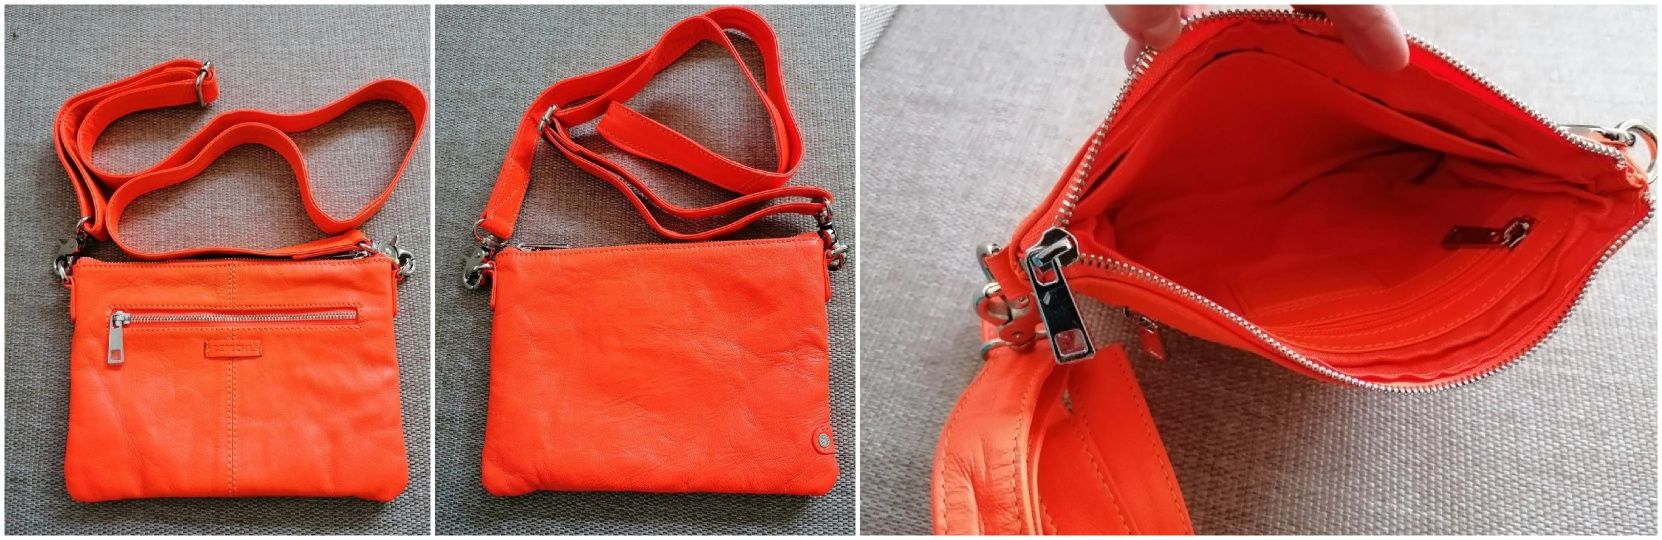 Чанти  естествена кожа:Carpisa бордо и  Depeche оранжева